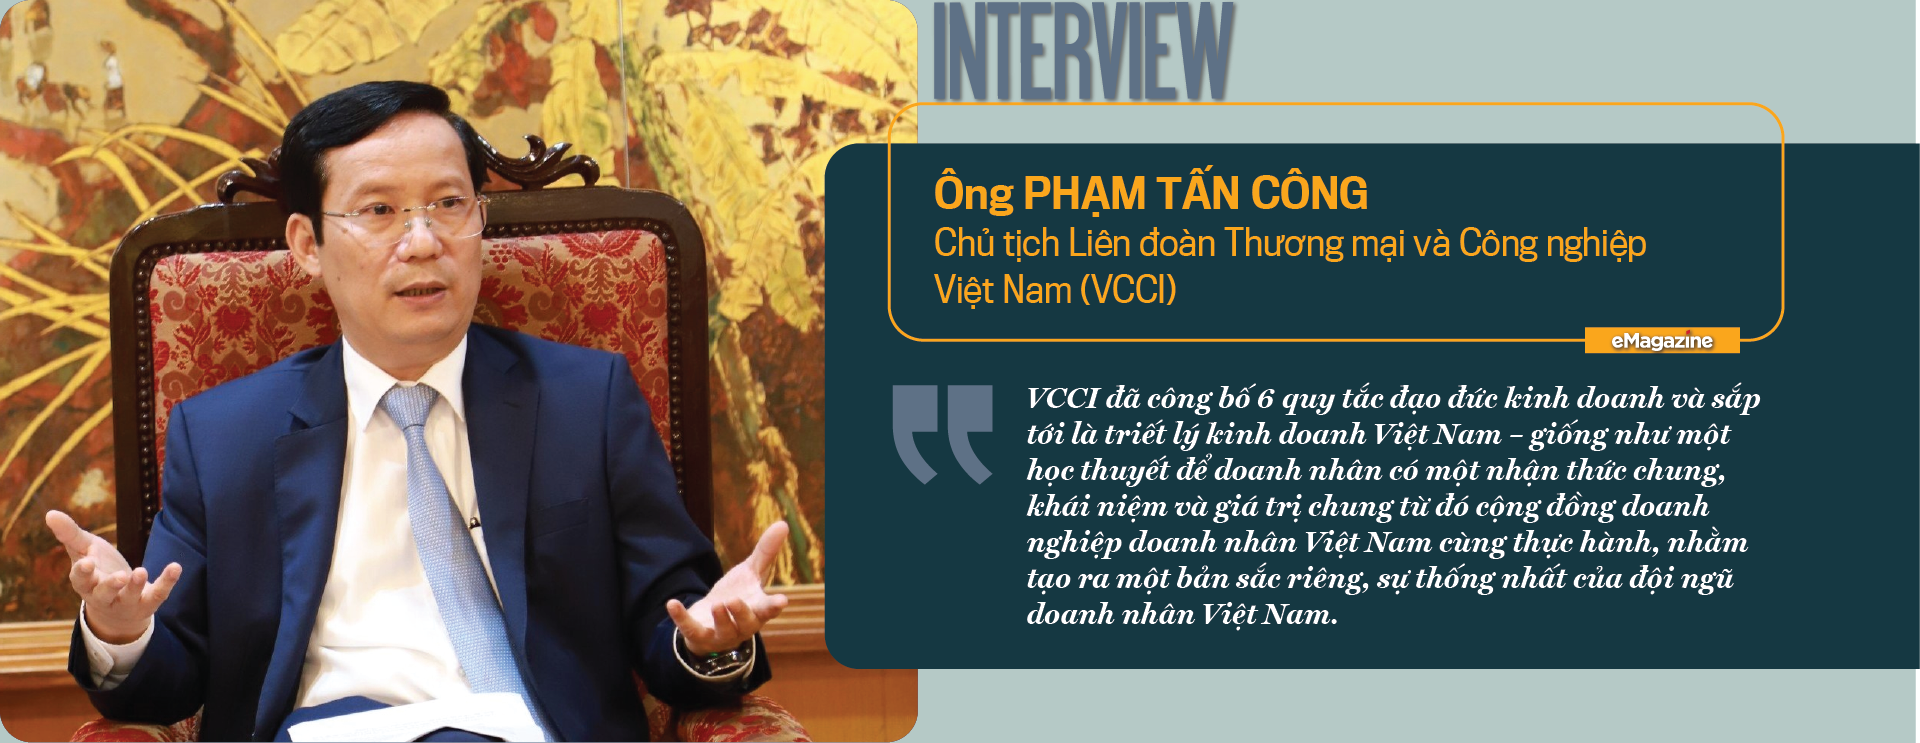 Nghị quyết 41: “Điểm tựa” phát triển doanh nhân Việt Nam trong thời kỳ mới - Ảnh 4